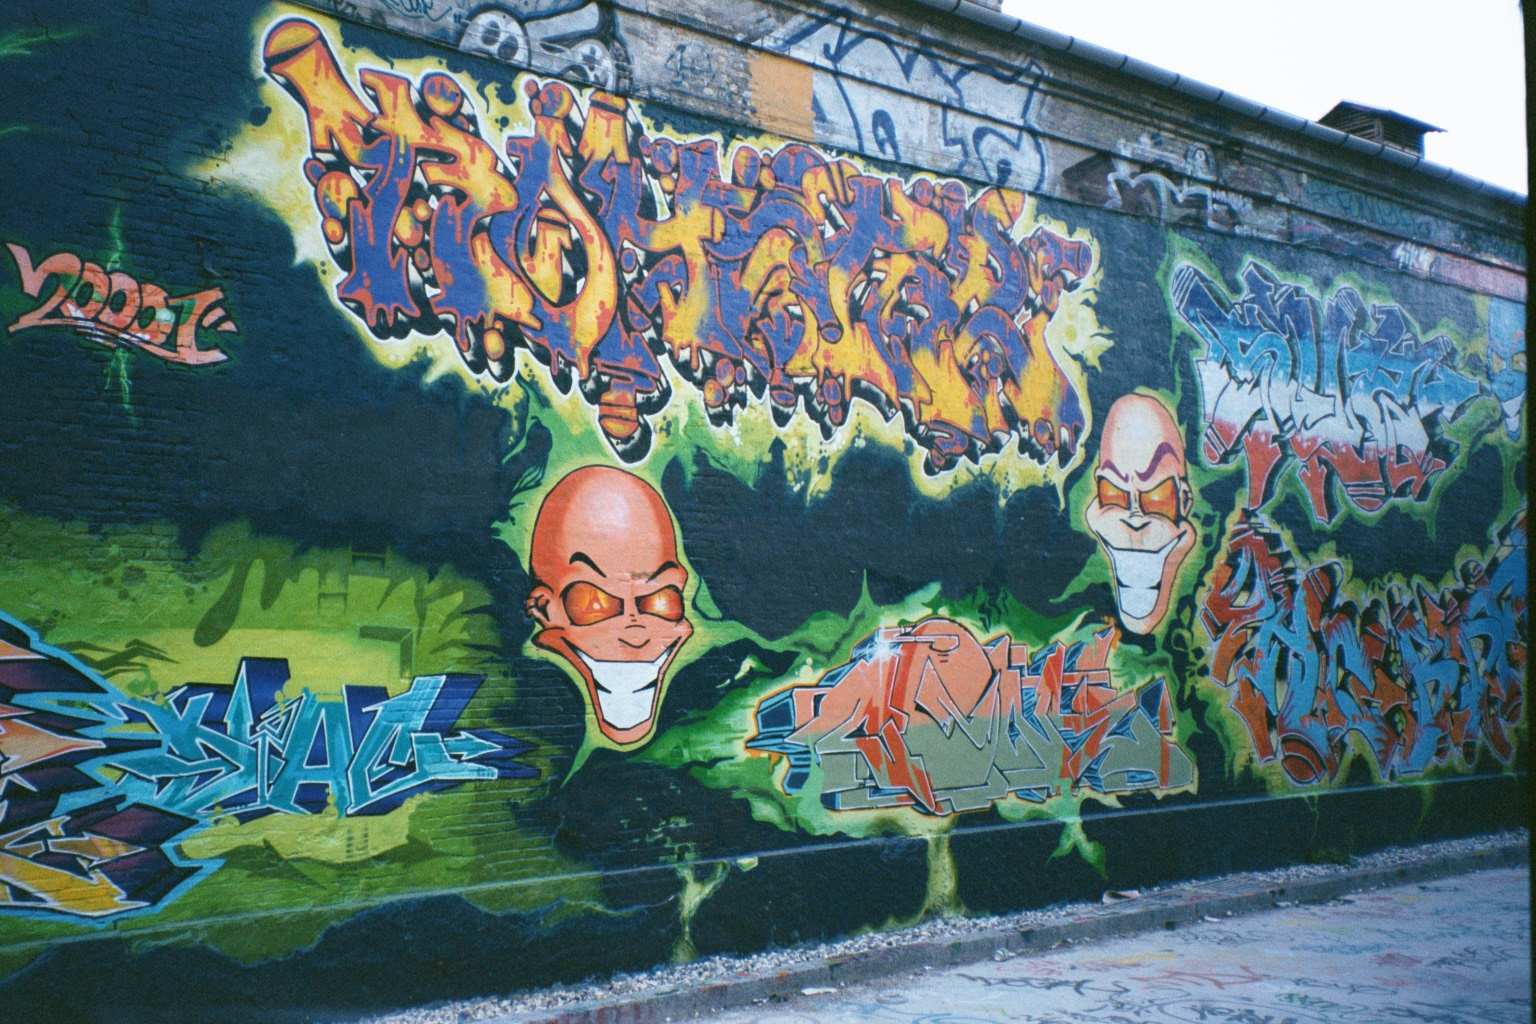 Graffiti in Copenhaggen